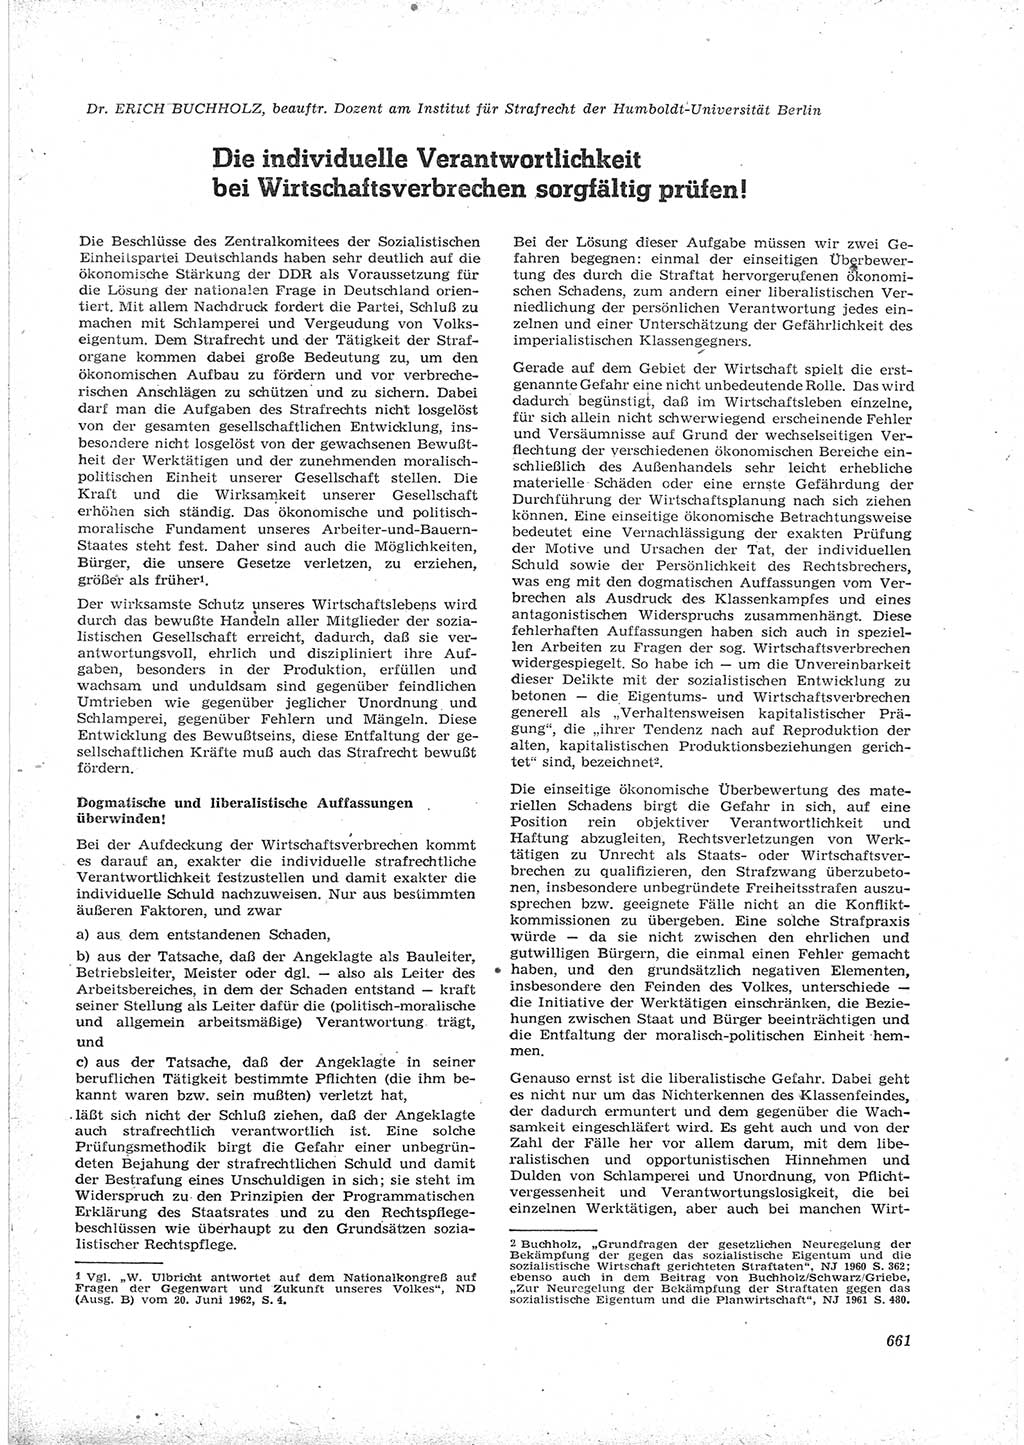 Neue Justiz (NJ), Zeitschrift für Recht und Rechtswissenschaft [Deutsche Demokratische Republik (DDR)], 16. Jahrgang 1962, Seite 661 (NJ DDR 1962, S. 661)